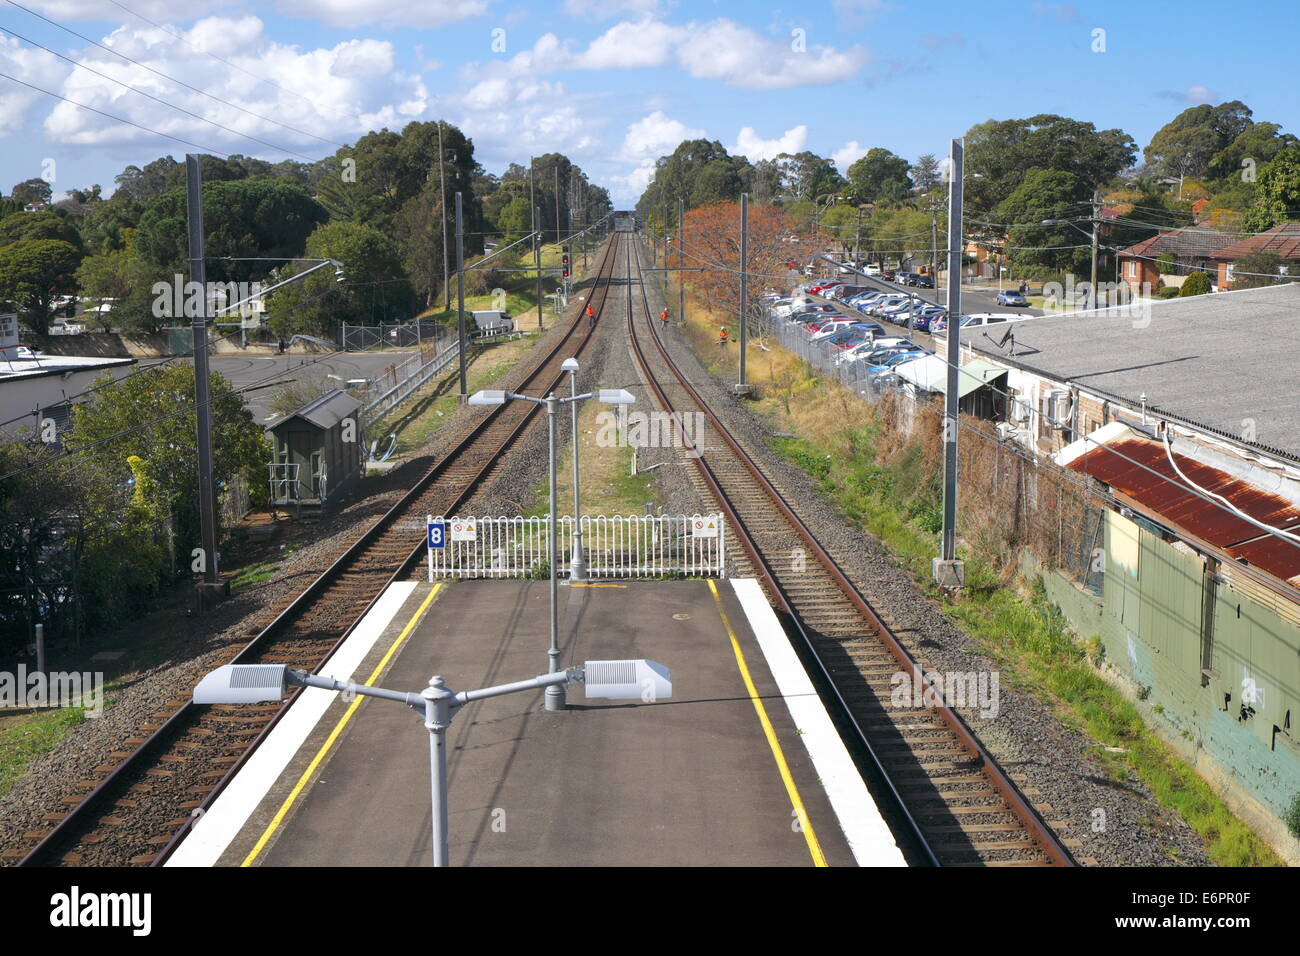 La red ferroviaria de Sydney visto cerca de la estación de ferrocarril de panania suburbio de Sydney, Nueva Gales del Sur, Australia Foto de stock